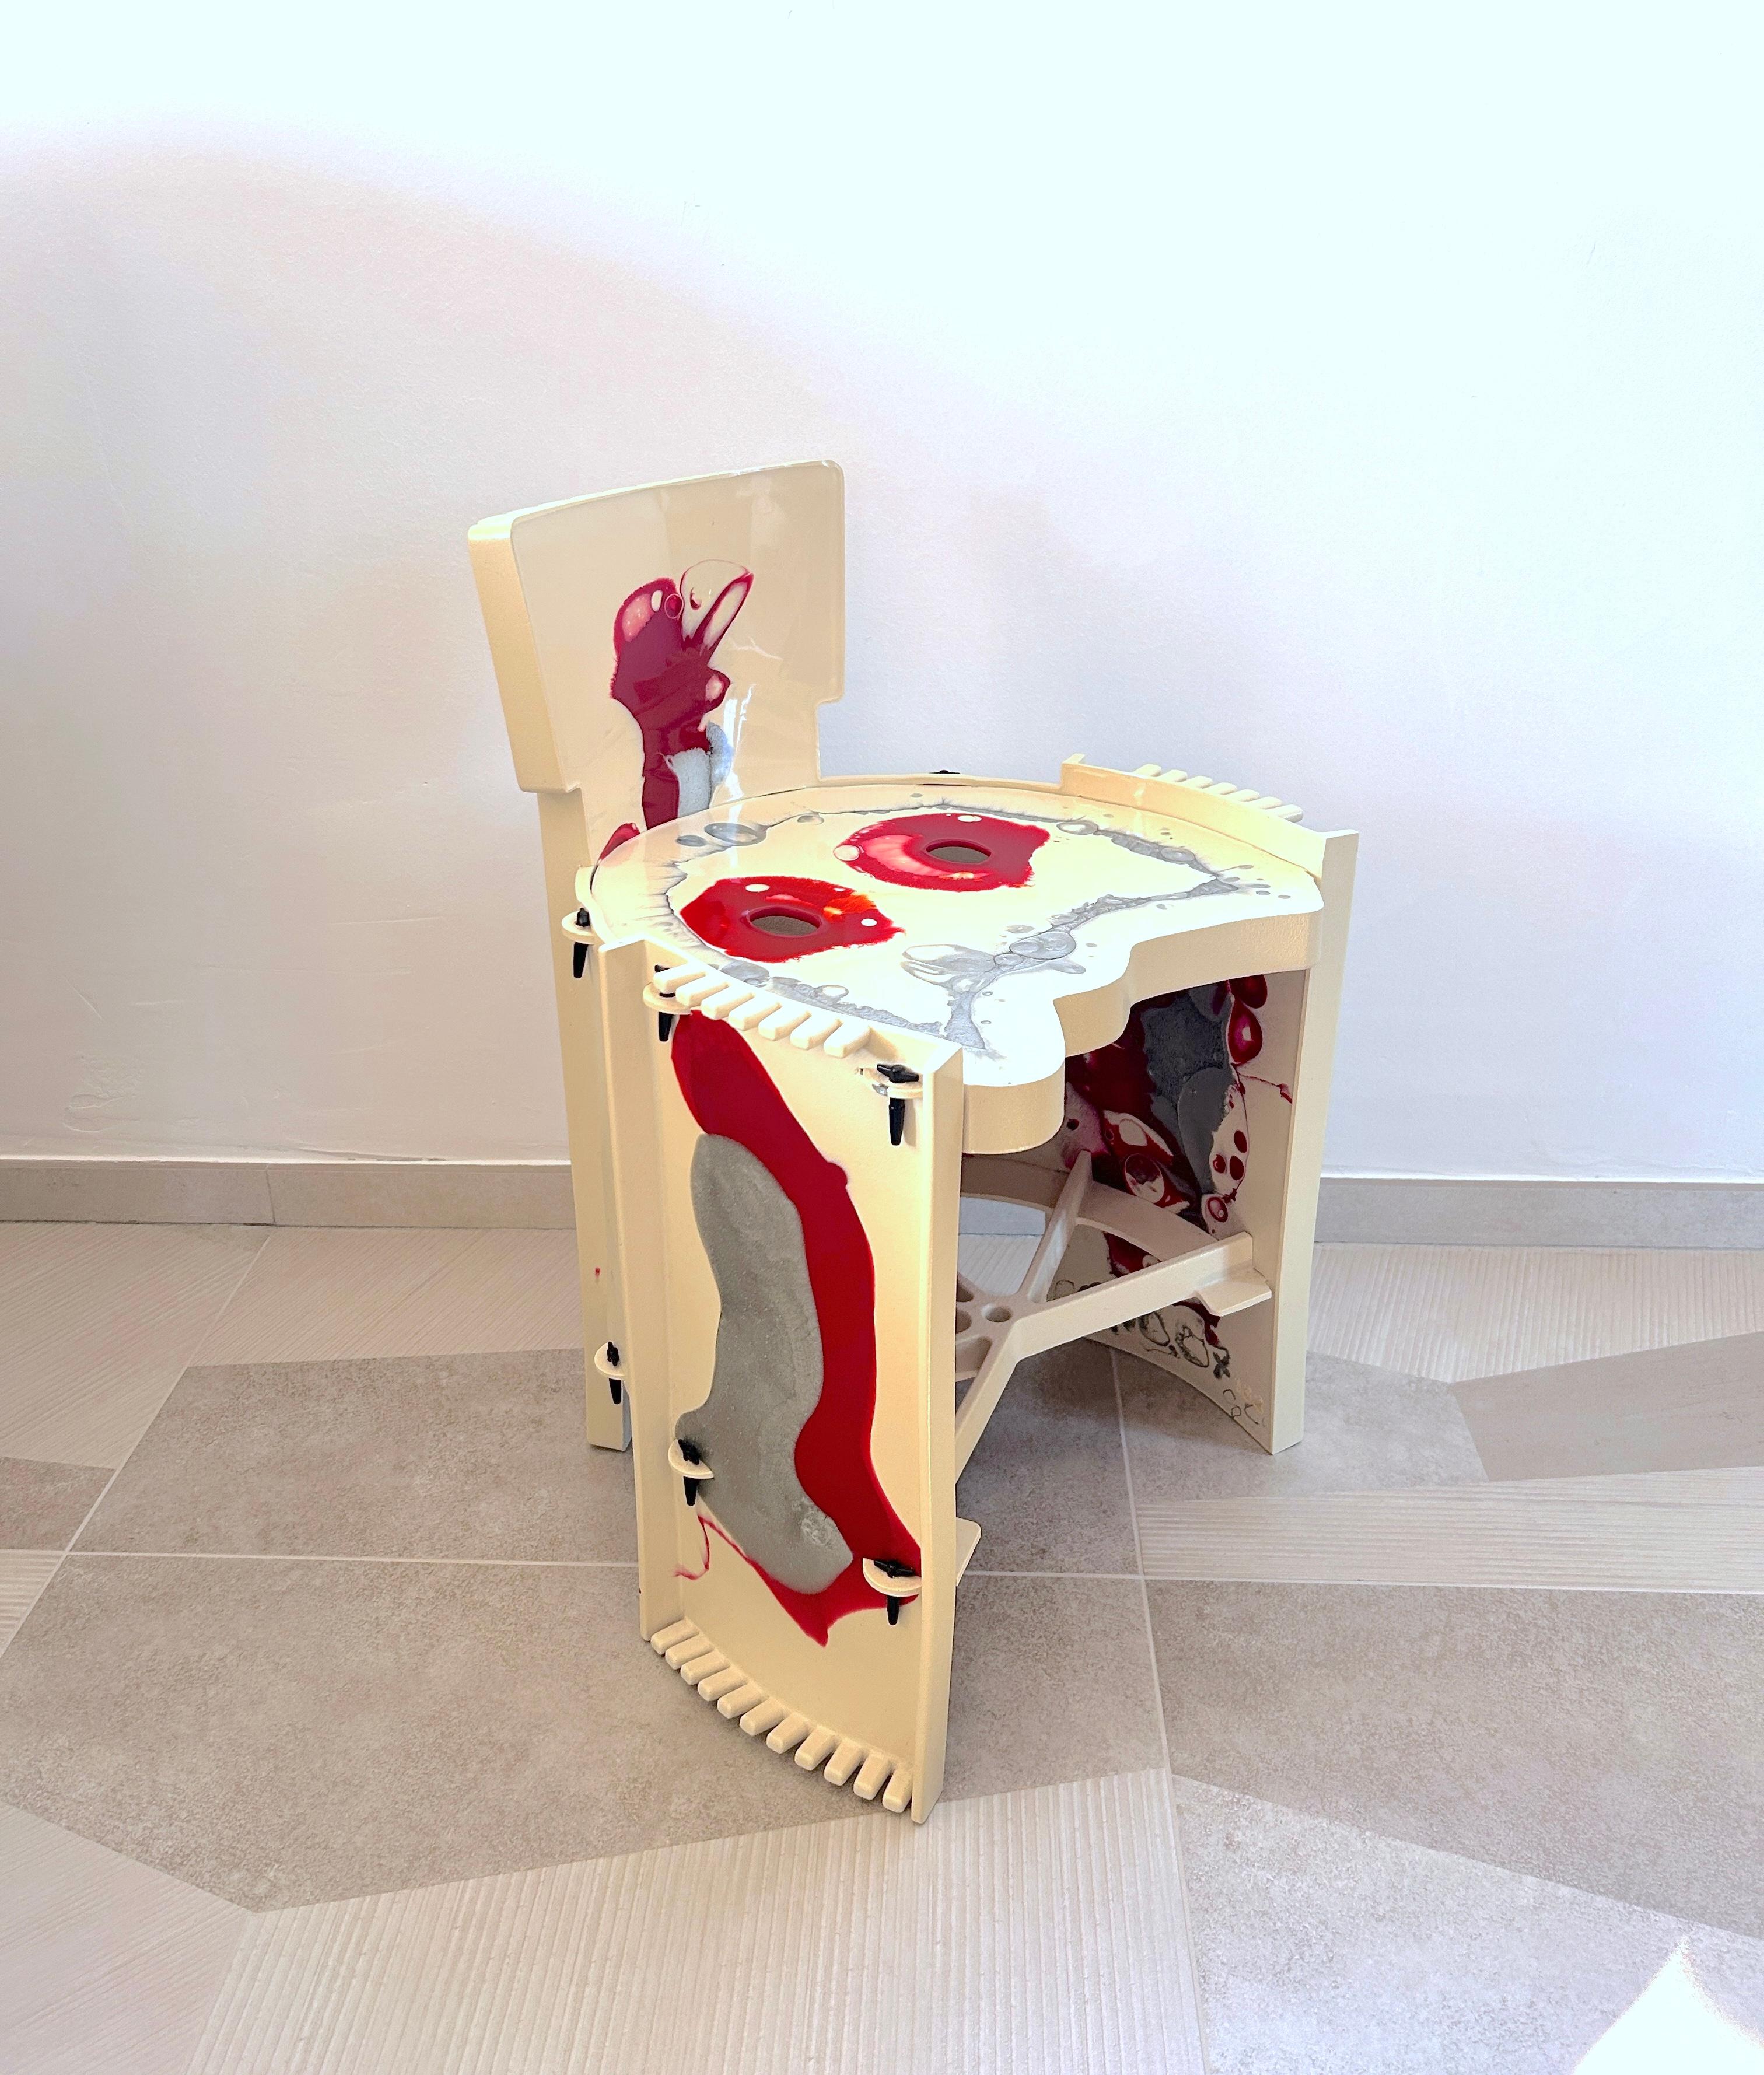 Bellissima piccola sedia realizzata da Gaetano Pesce per Zerodiegno nel 2003.
Decorata nei toni del bianco, rosso e argento, dona un tocco di eleganza all'ambiente in cui viene collocata. Utilizzabile dai bambini come poltroncina, può essere usata